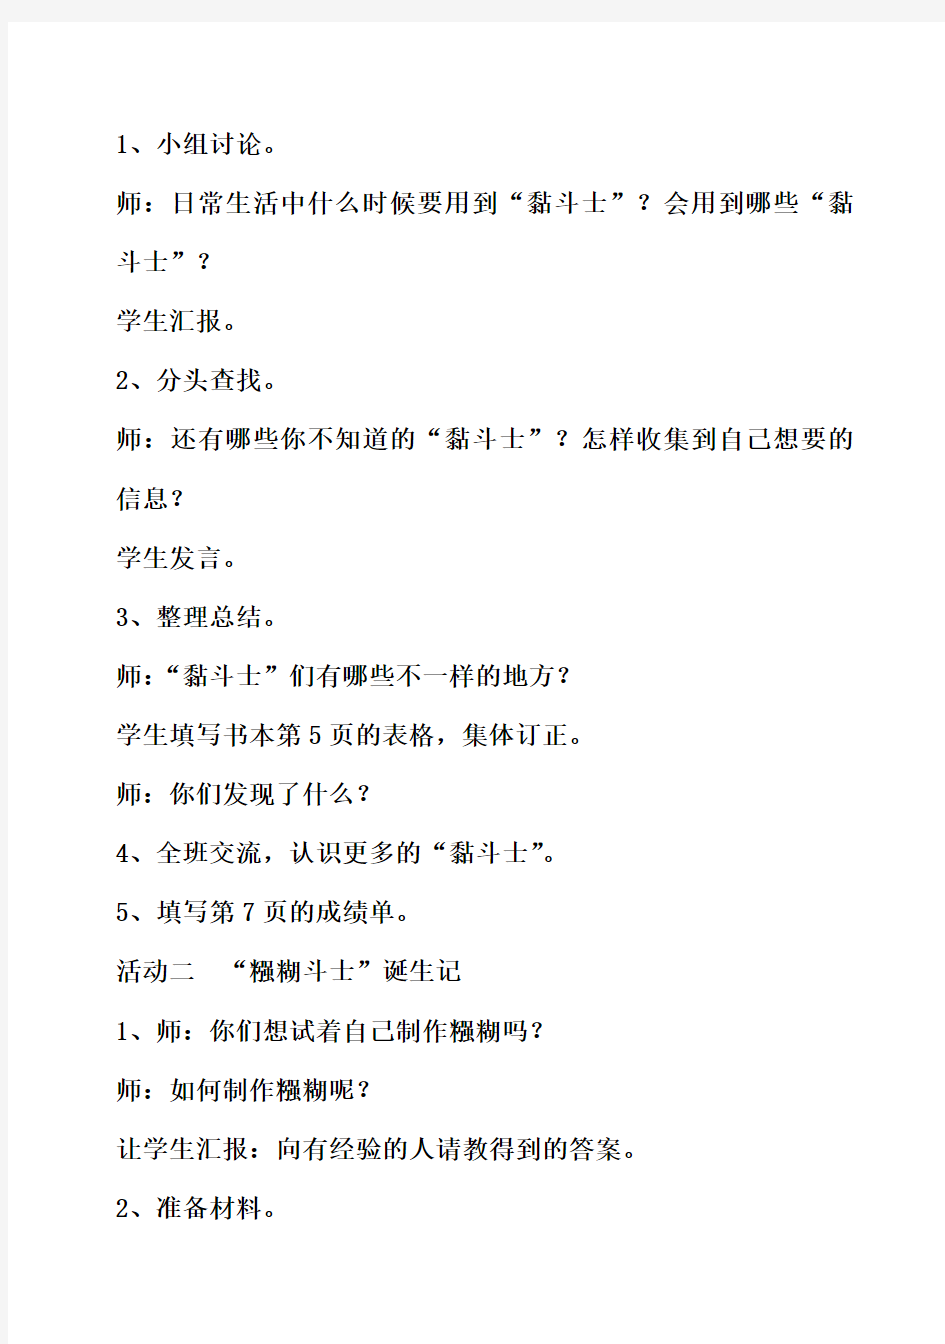 小学四年级下册综合实践活动教案(上海科技教育出版社)1